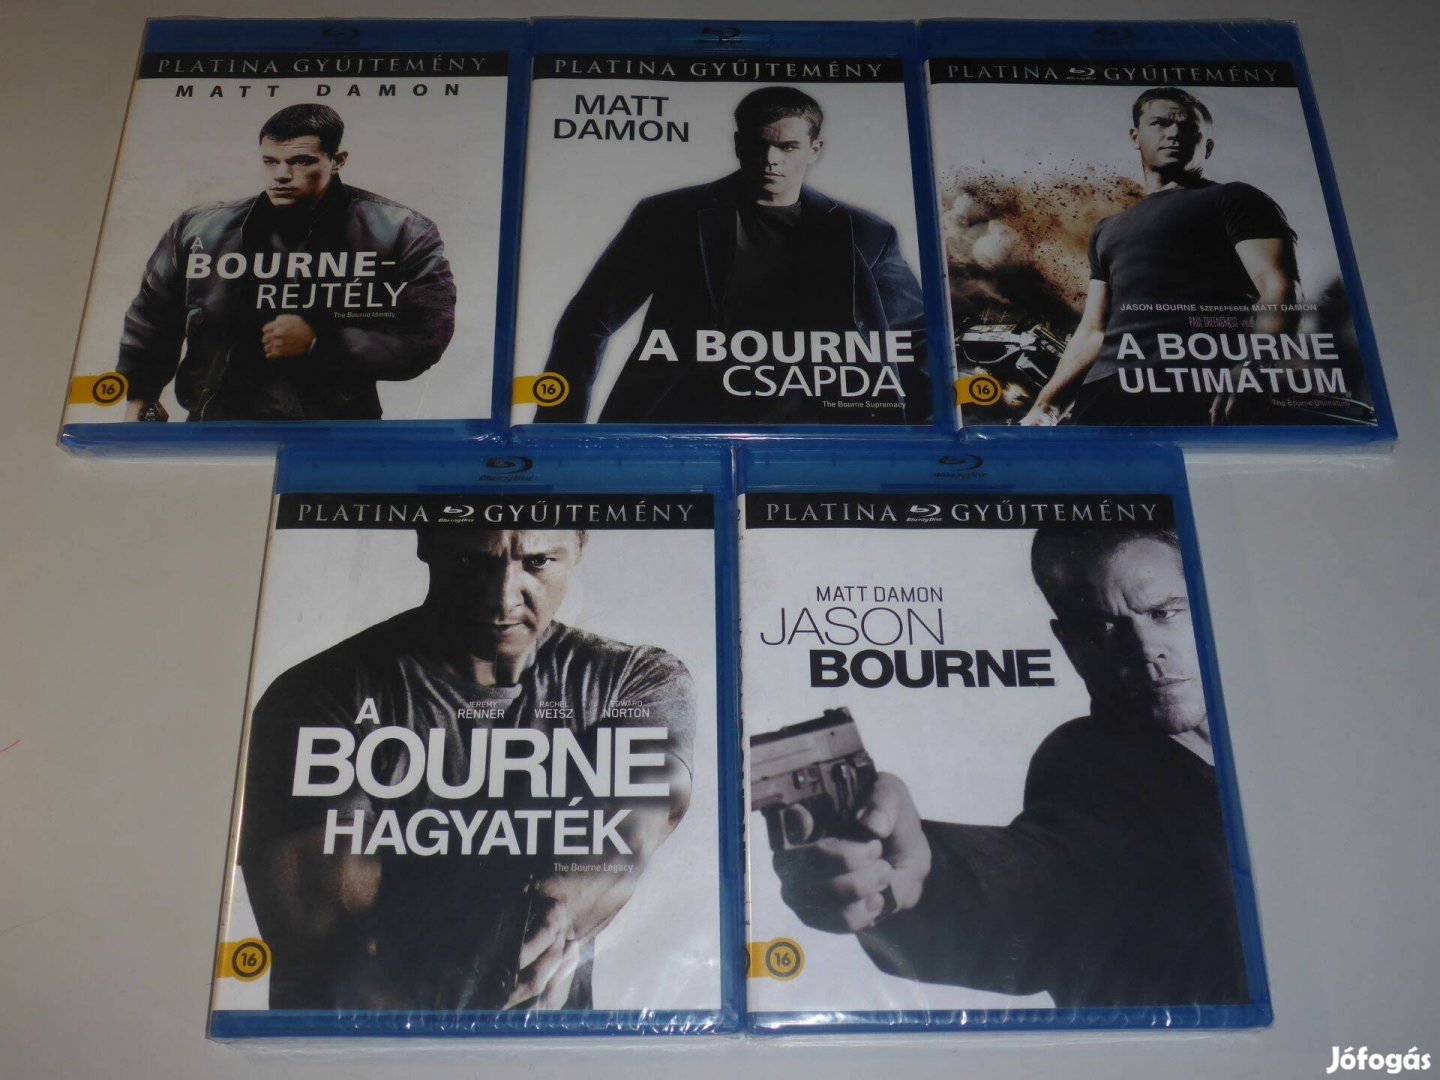 A Bourne gyűjtemény blu-ray film